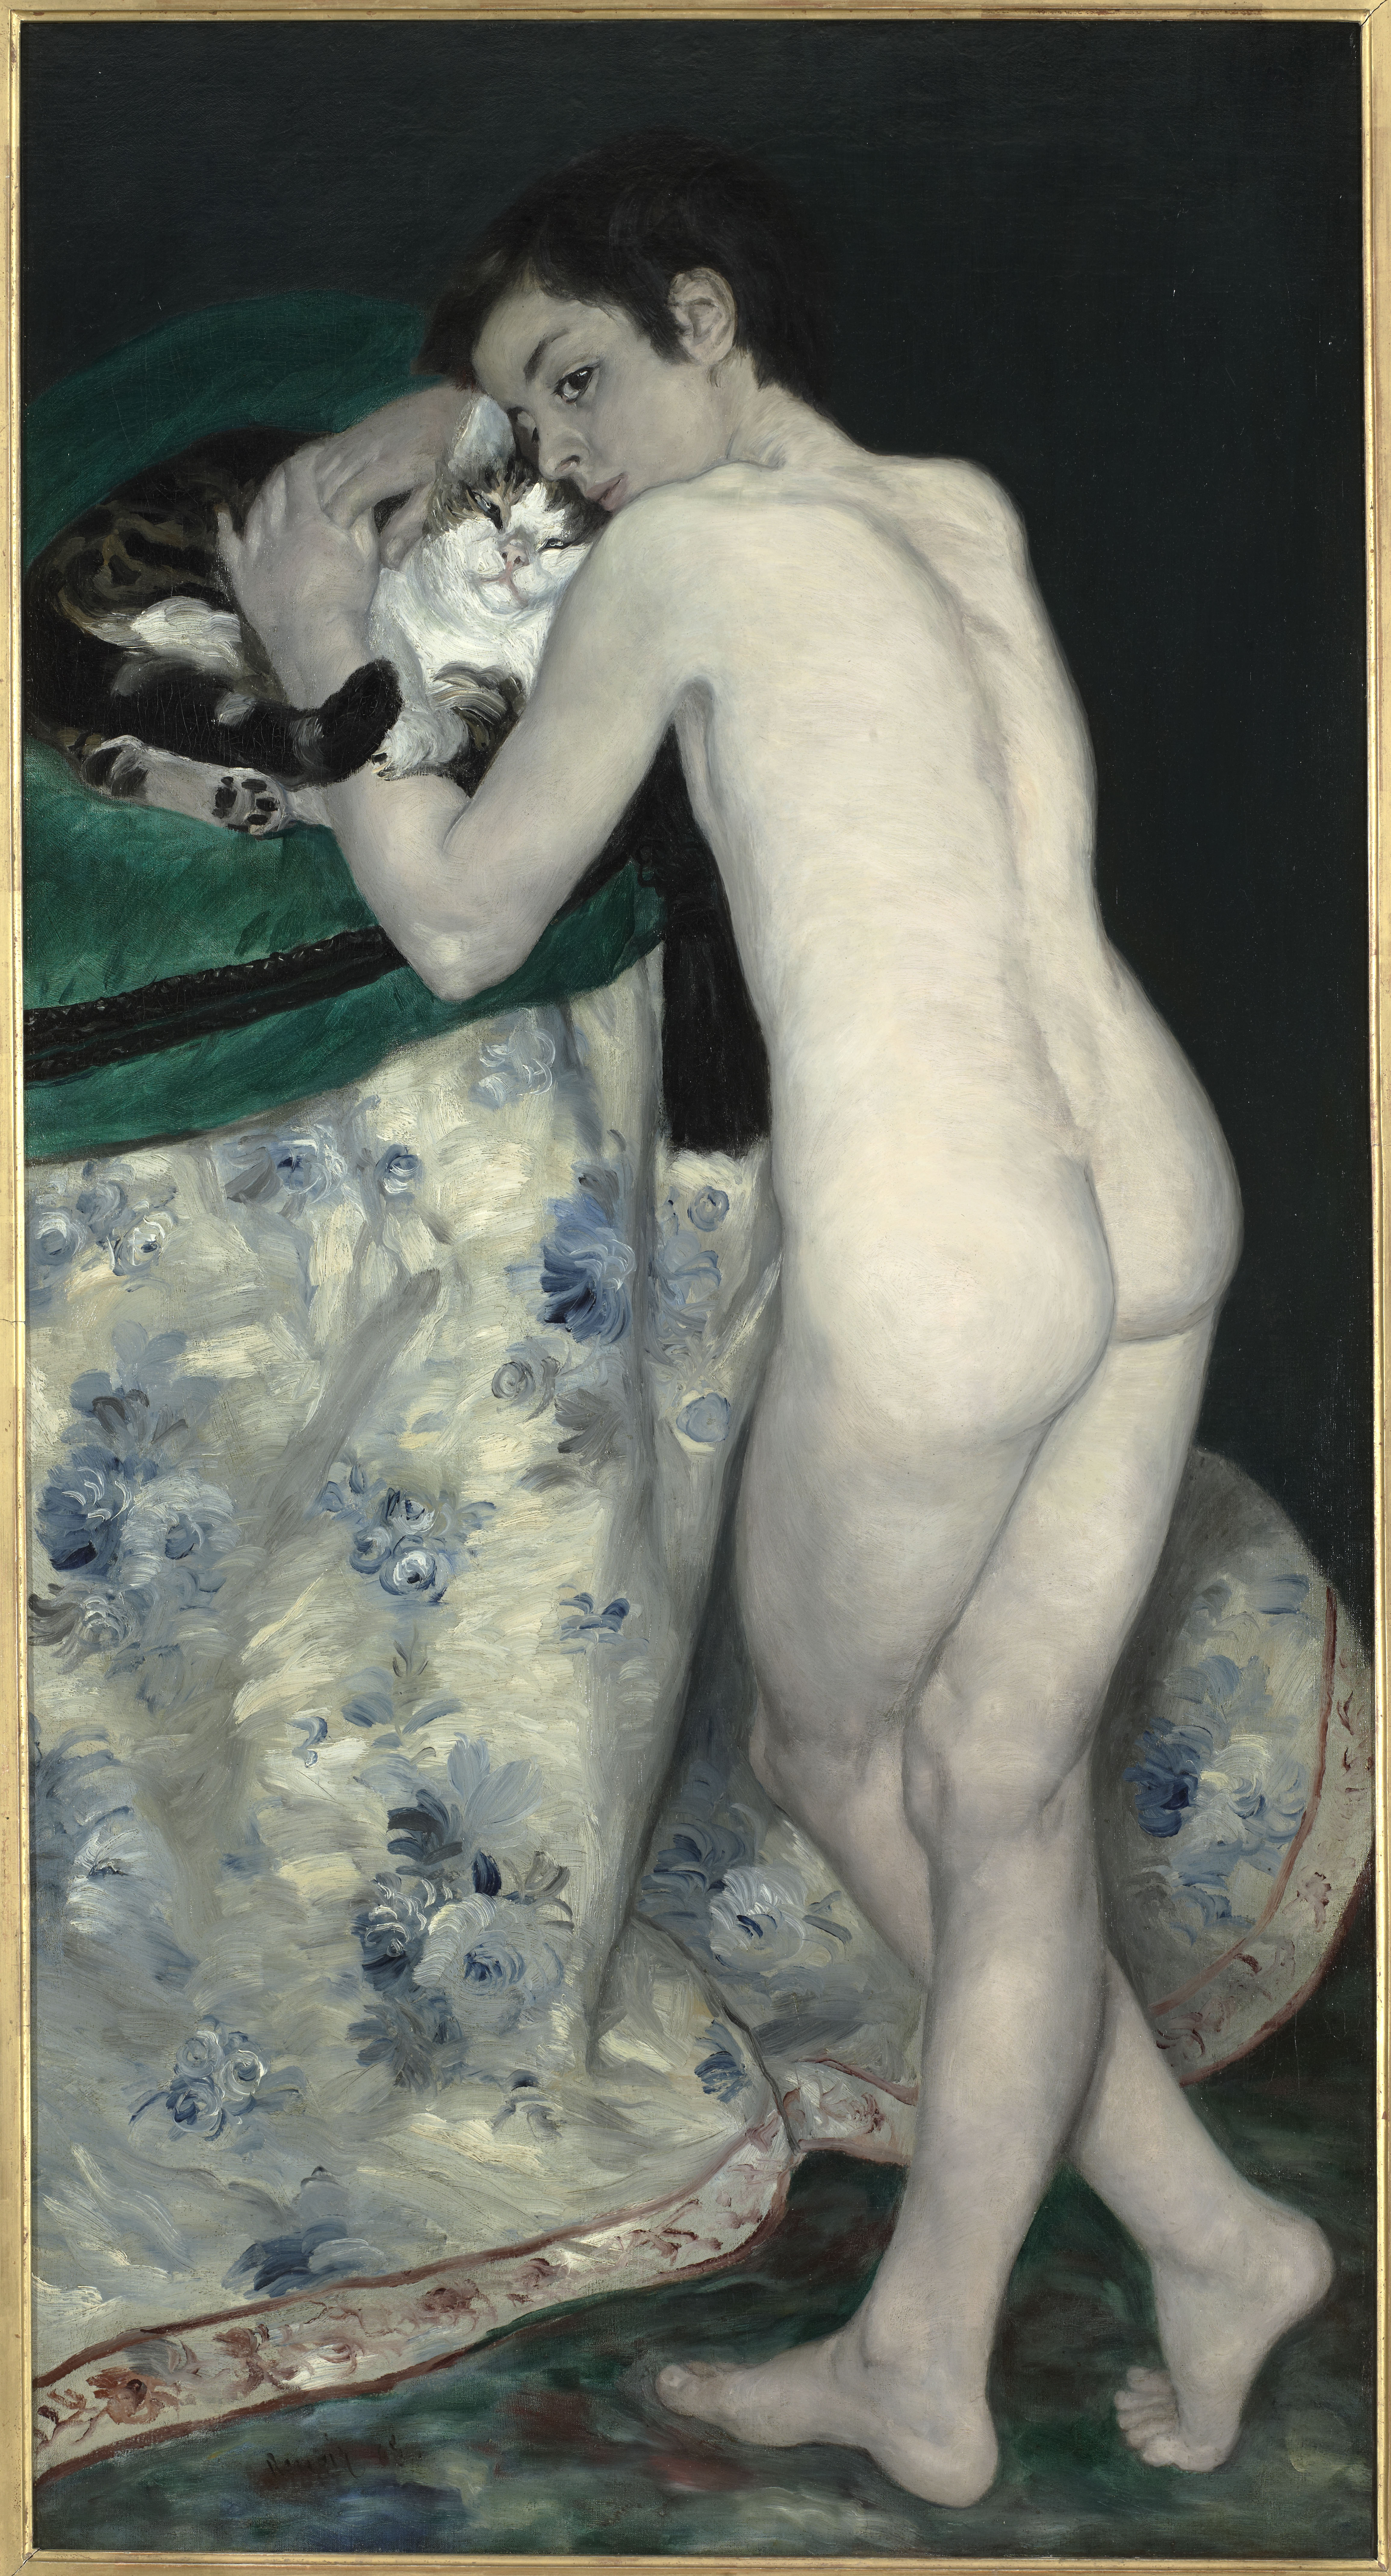 À l’invitation de La Petite Châtelaine : les enfants impressionnistes du musée d’Orsay